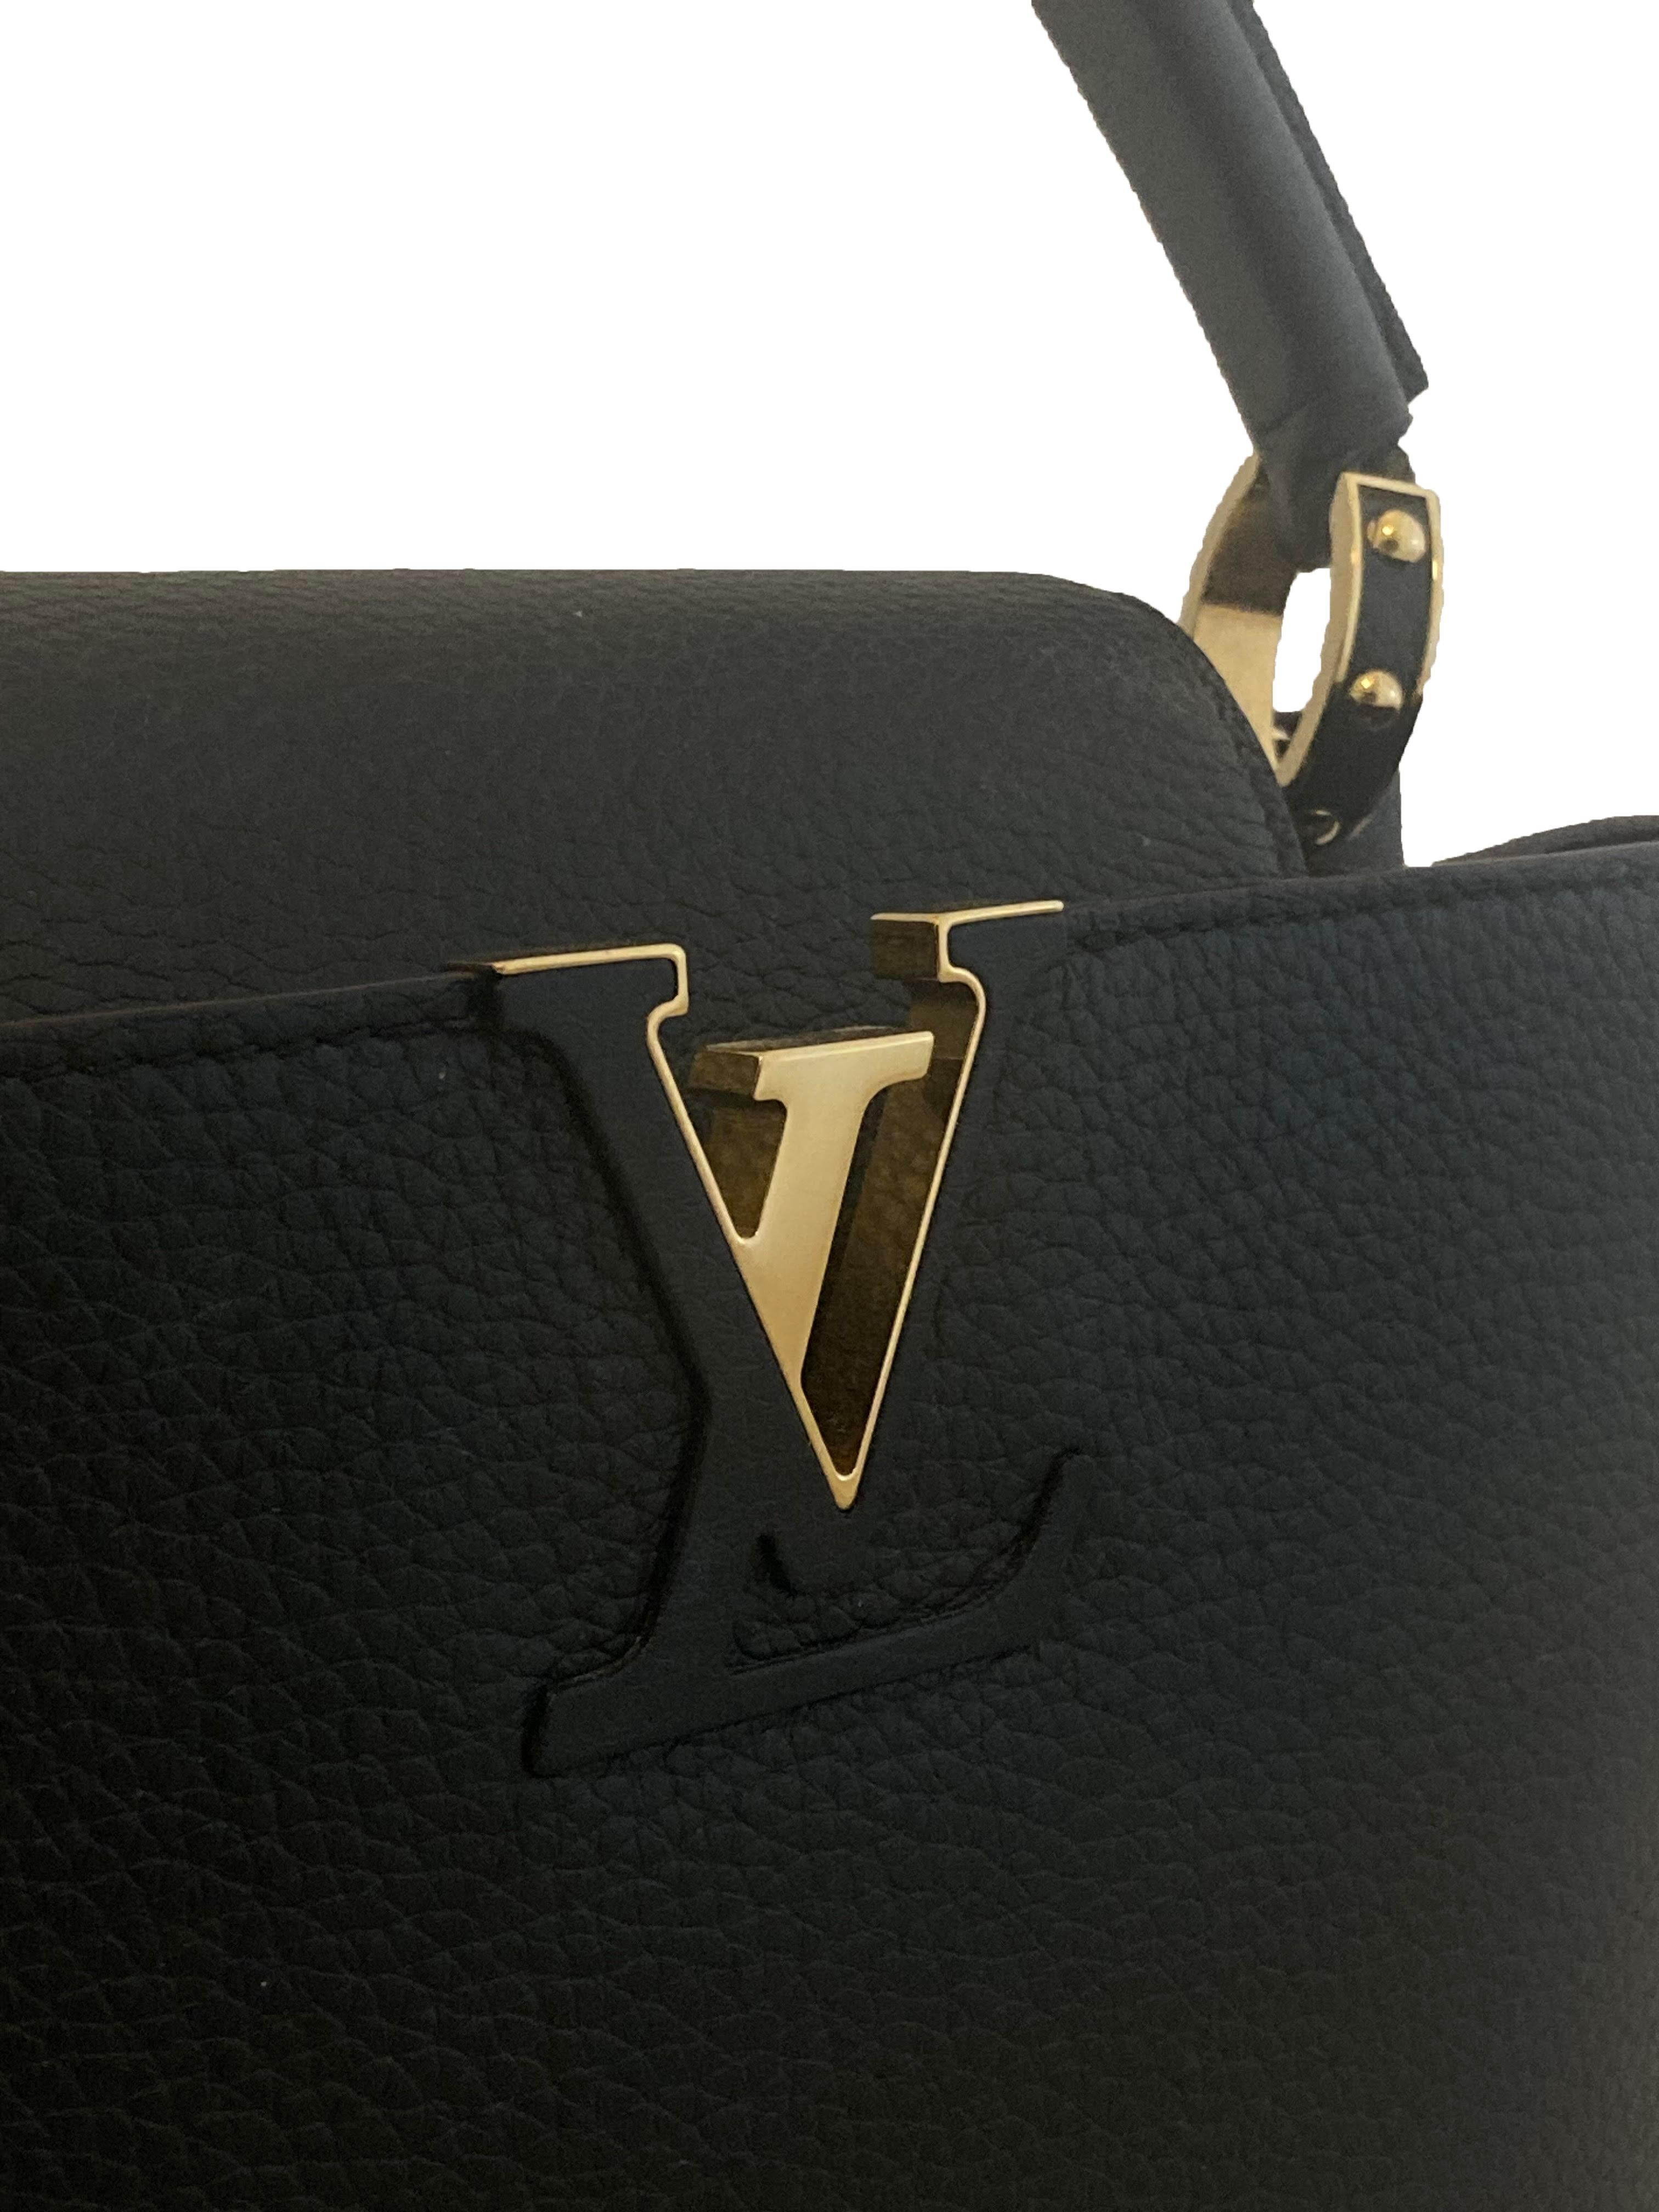 Schwarze Lederhandtasche Capucine BB von Louis Vuitton. Schwarzes strukturiertes Taurillon-Leder mit glänzender, goldfarbener Hardware. Auf der Vorderseite befindet sich ein ineinander greifendes LV